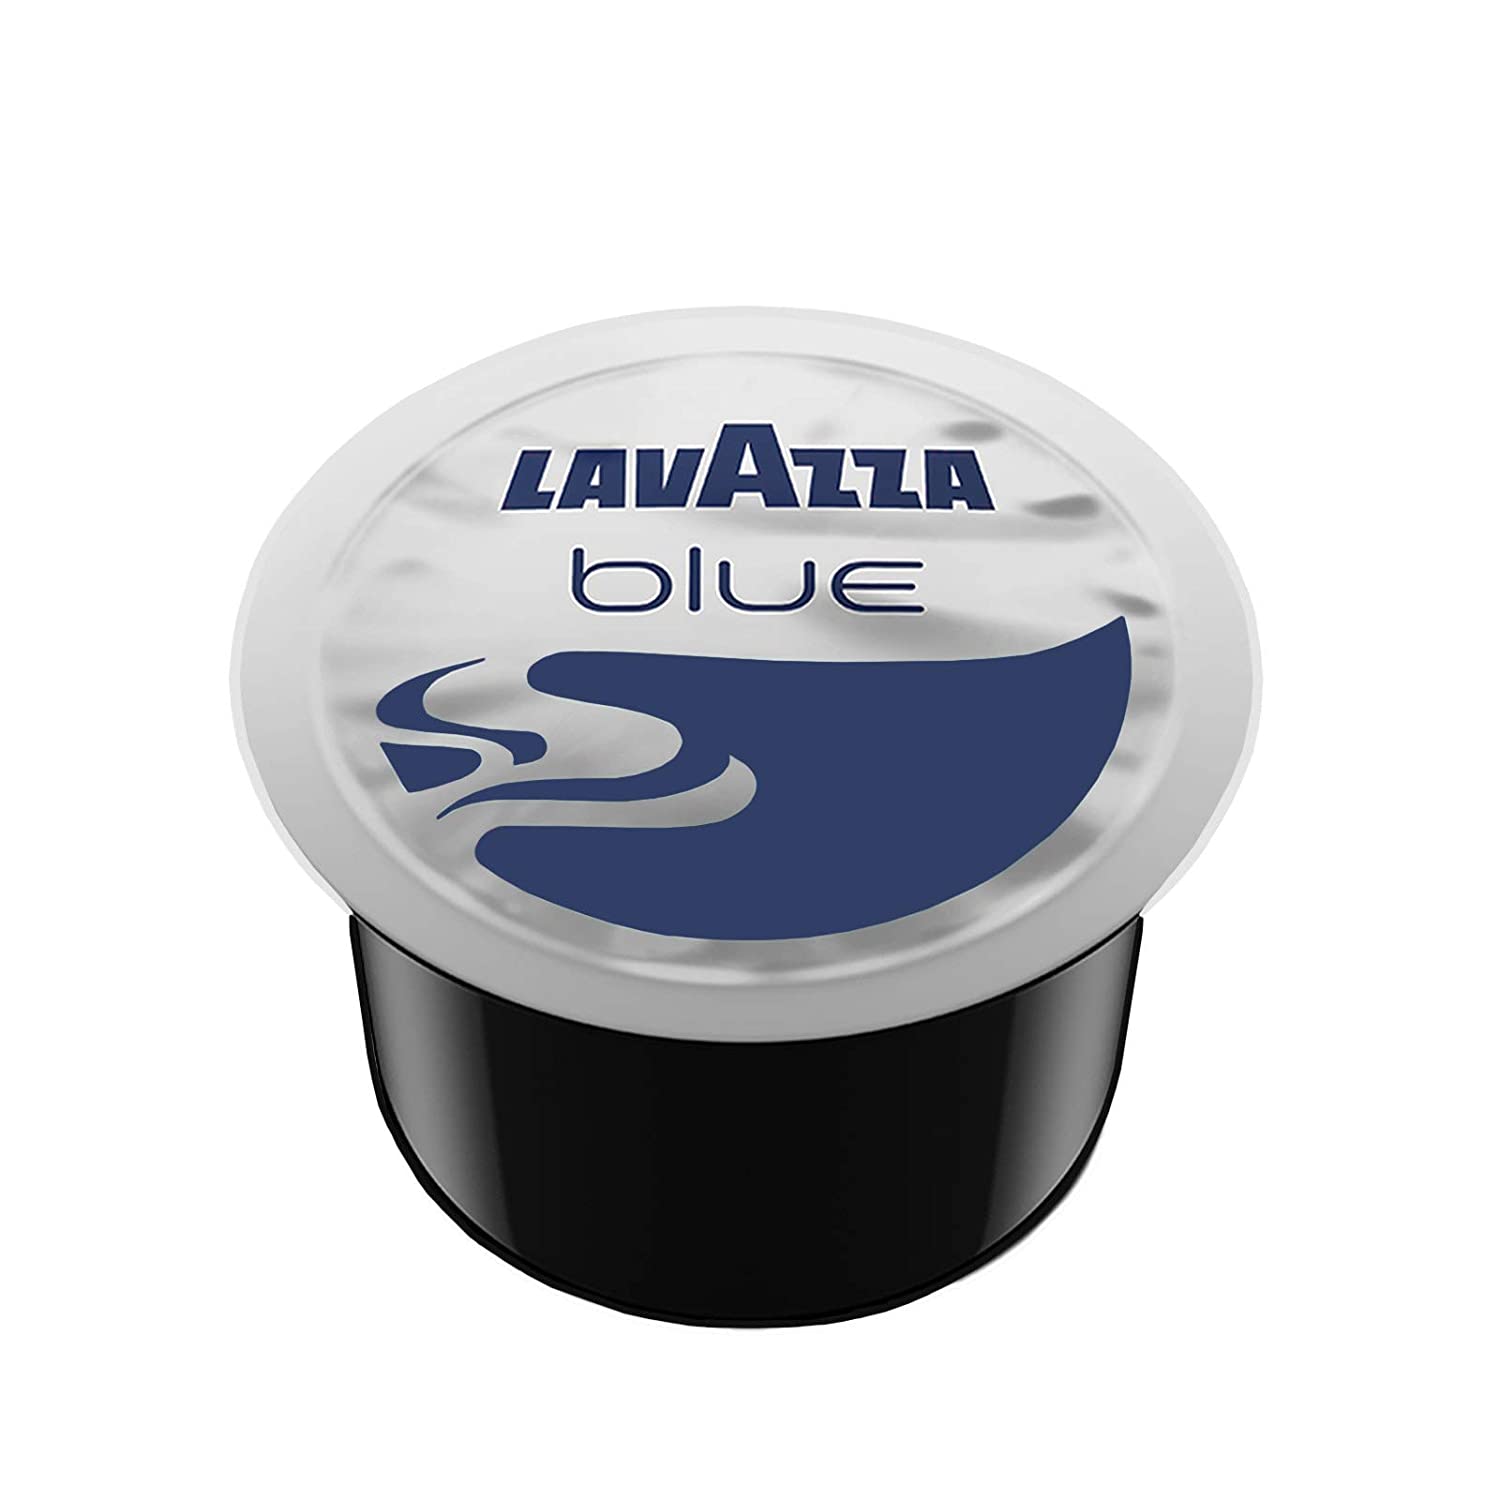 Lavazza (R) Original Coffee Capsules Lavazza Blue Crema – 100 Capsules